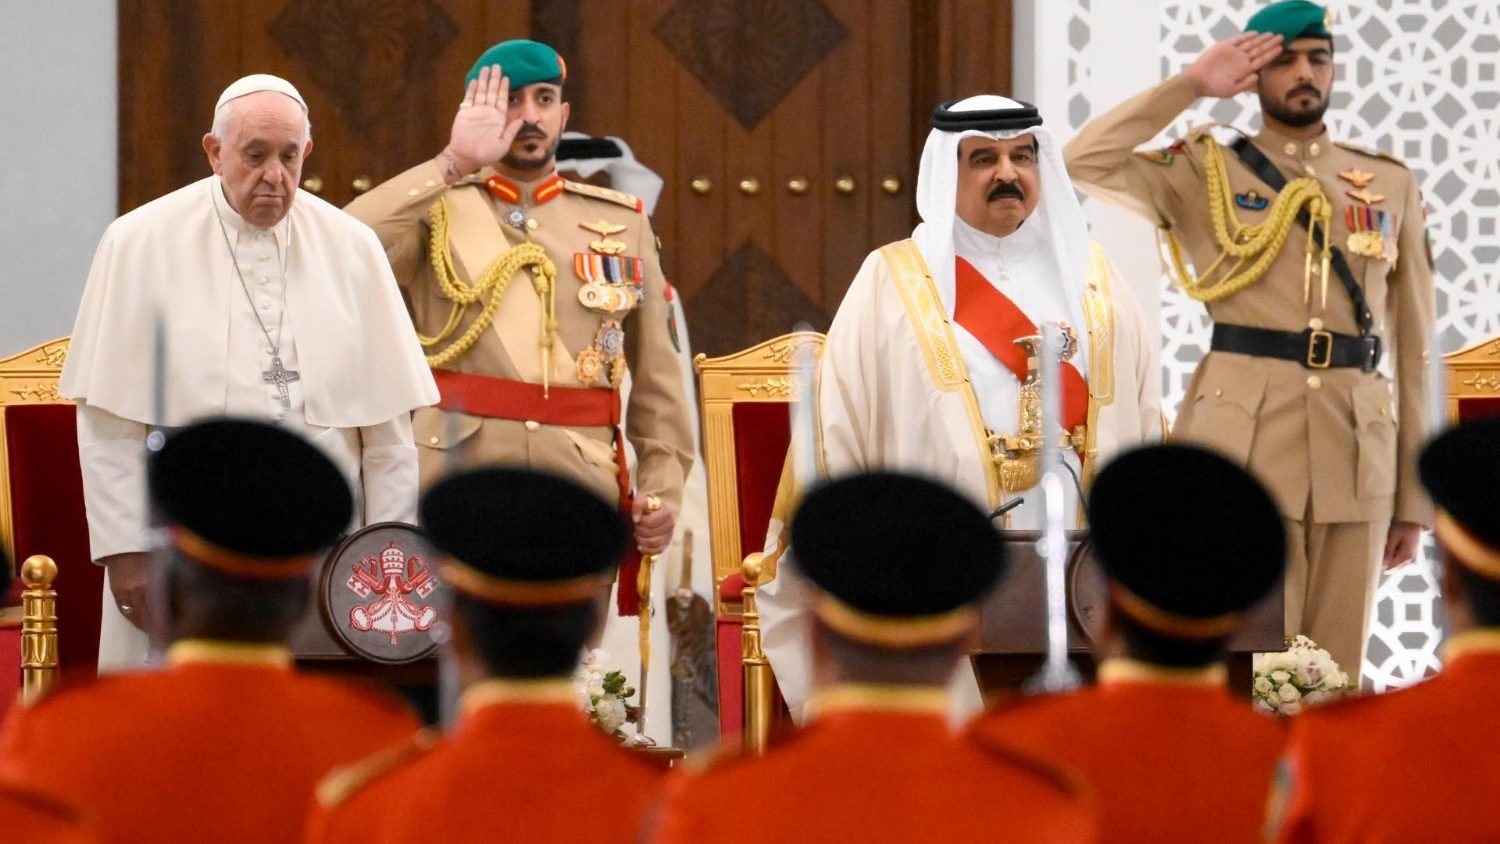 Впервые в истории Папа Римский посещает Королевство Бахрейн (+ ФОТО)